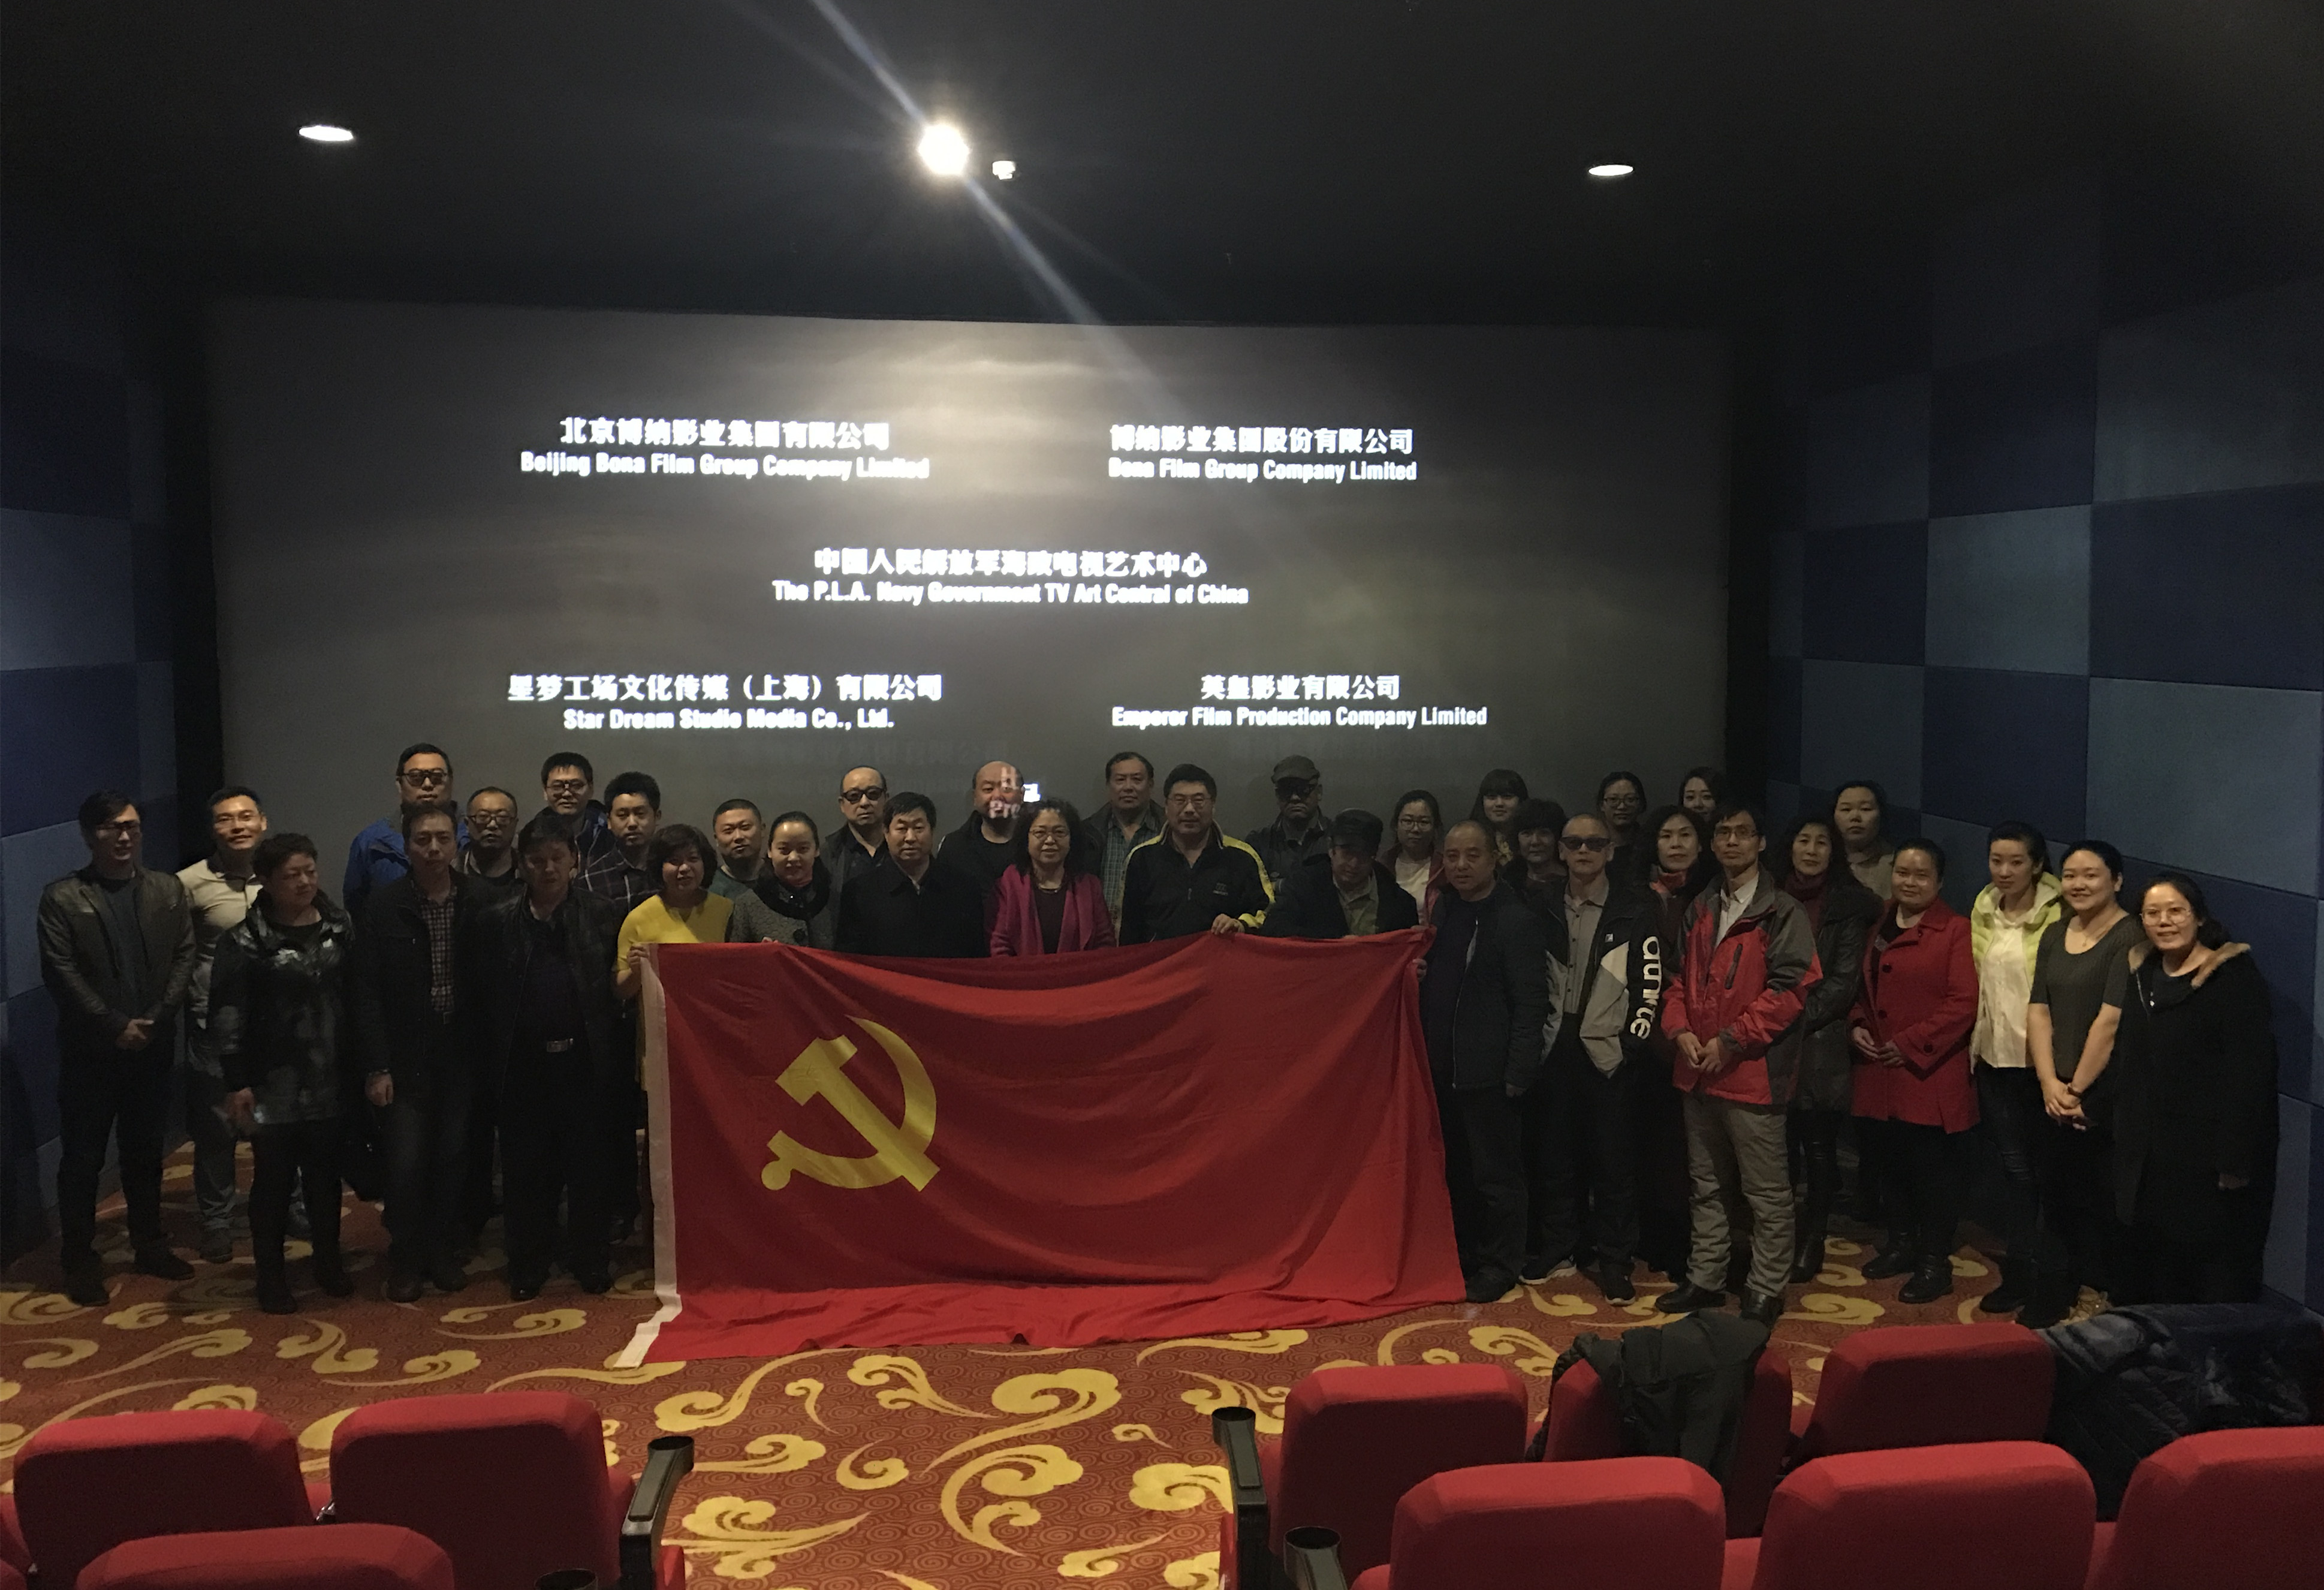 第四党总支组织全体党员干部观看影片《红海行动》